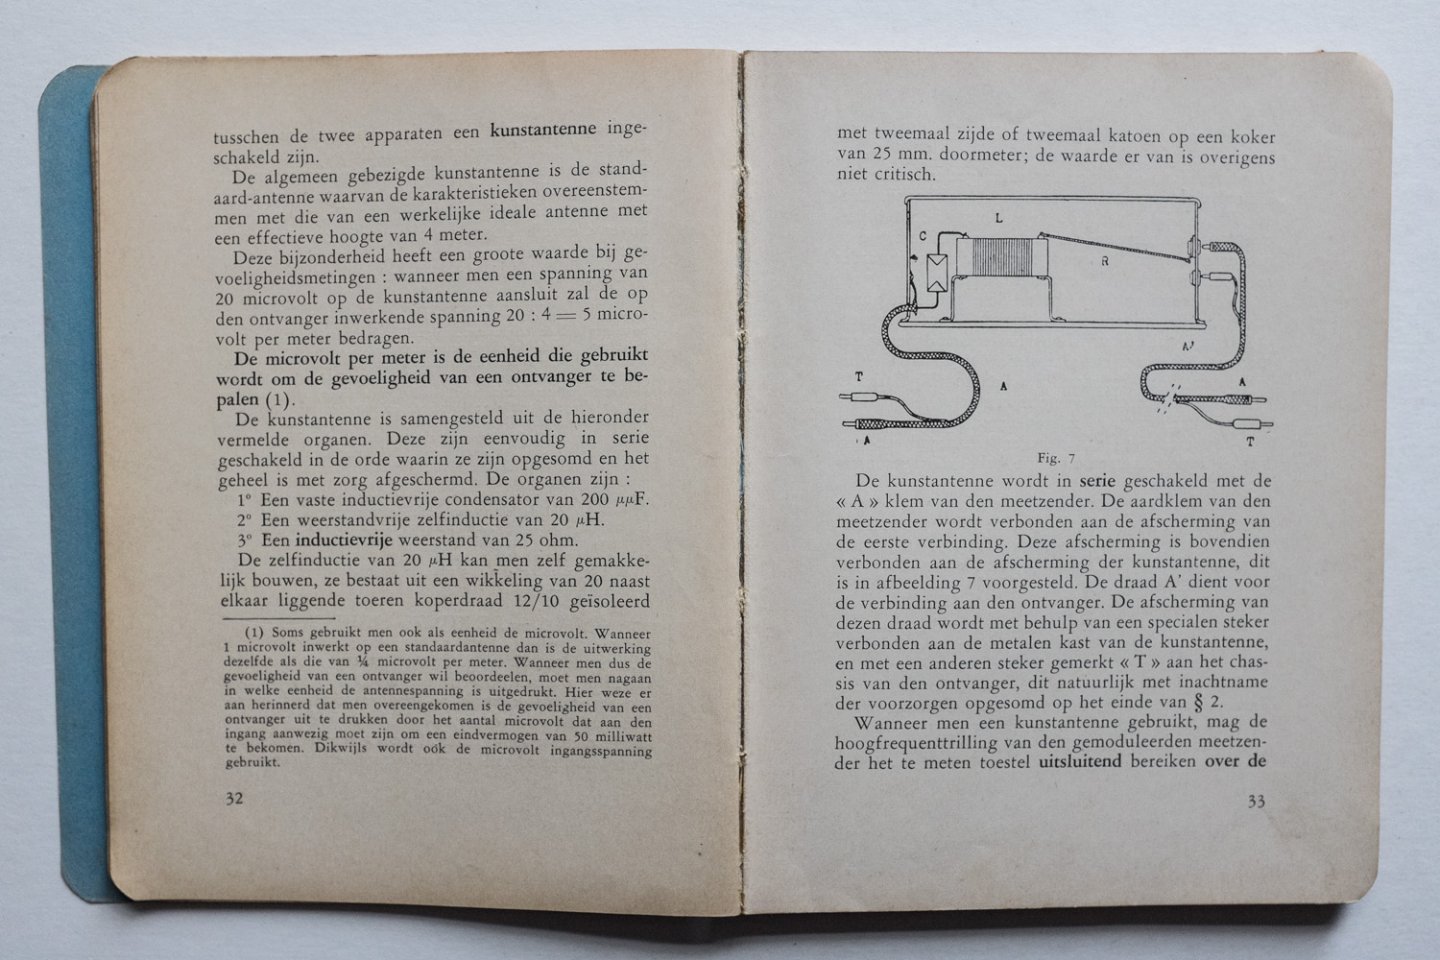 Planès-Py, André  en Joseph Gély - Leerboek der practijk van het afregelen der eenknopsontvangers - Nederlandsche vert. naar de speciaal herz. en bijgew. 7de Fransche uitg. door P.H. Brans